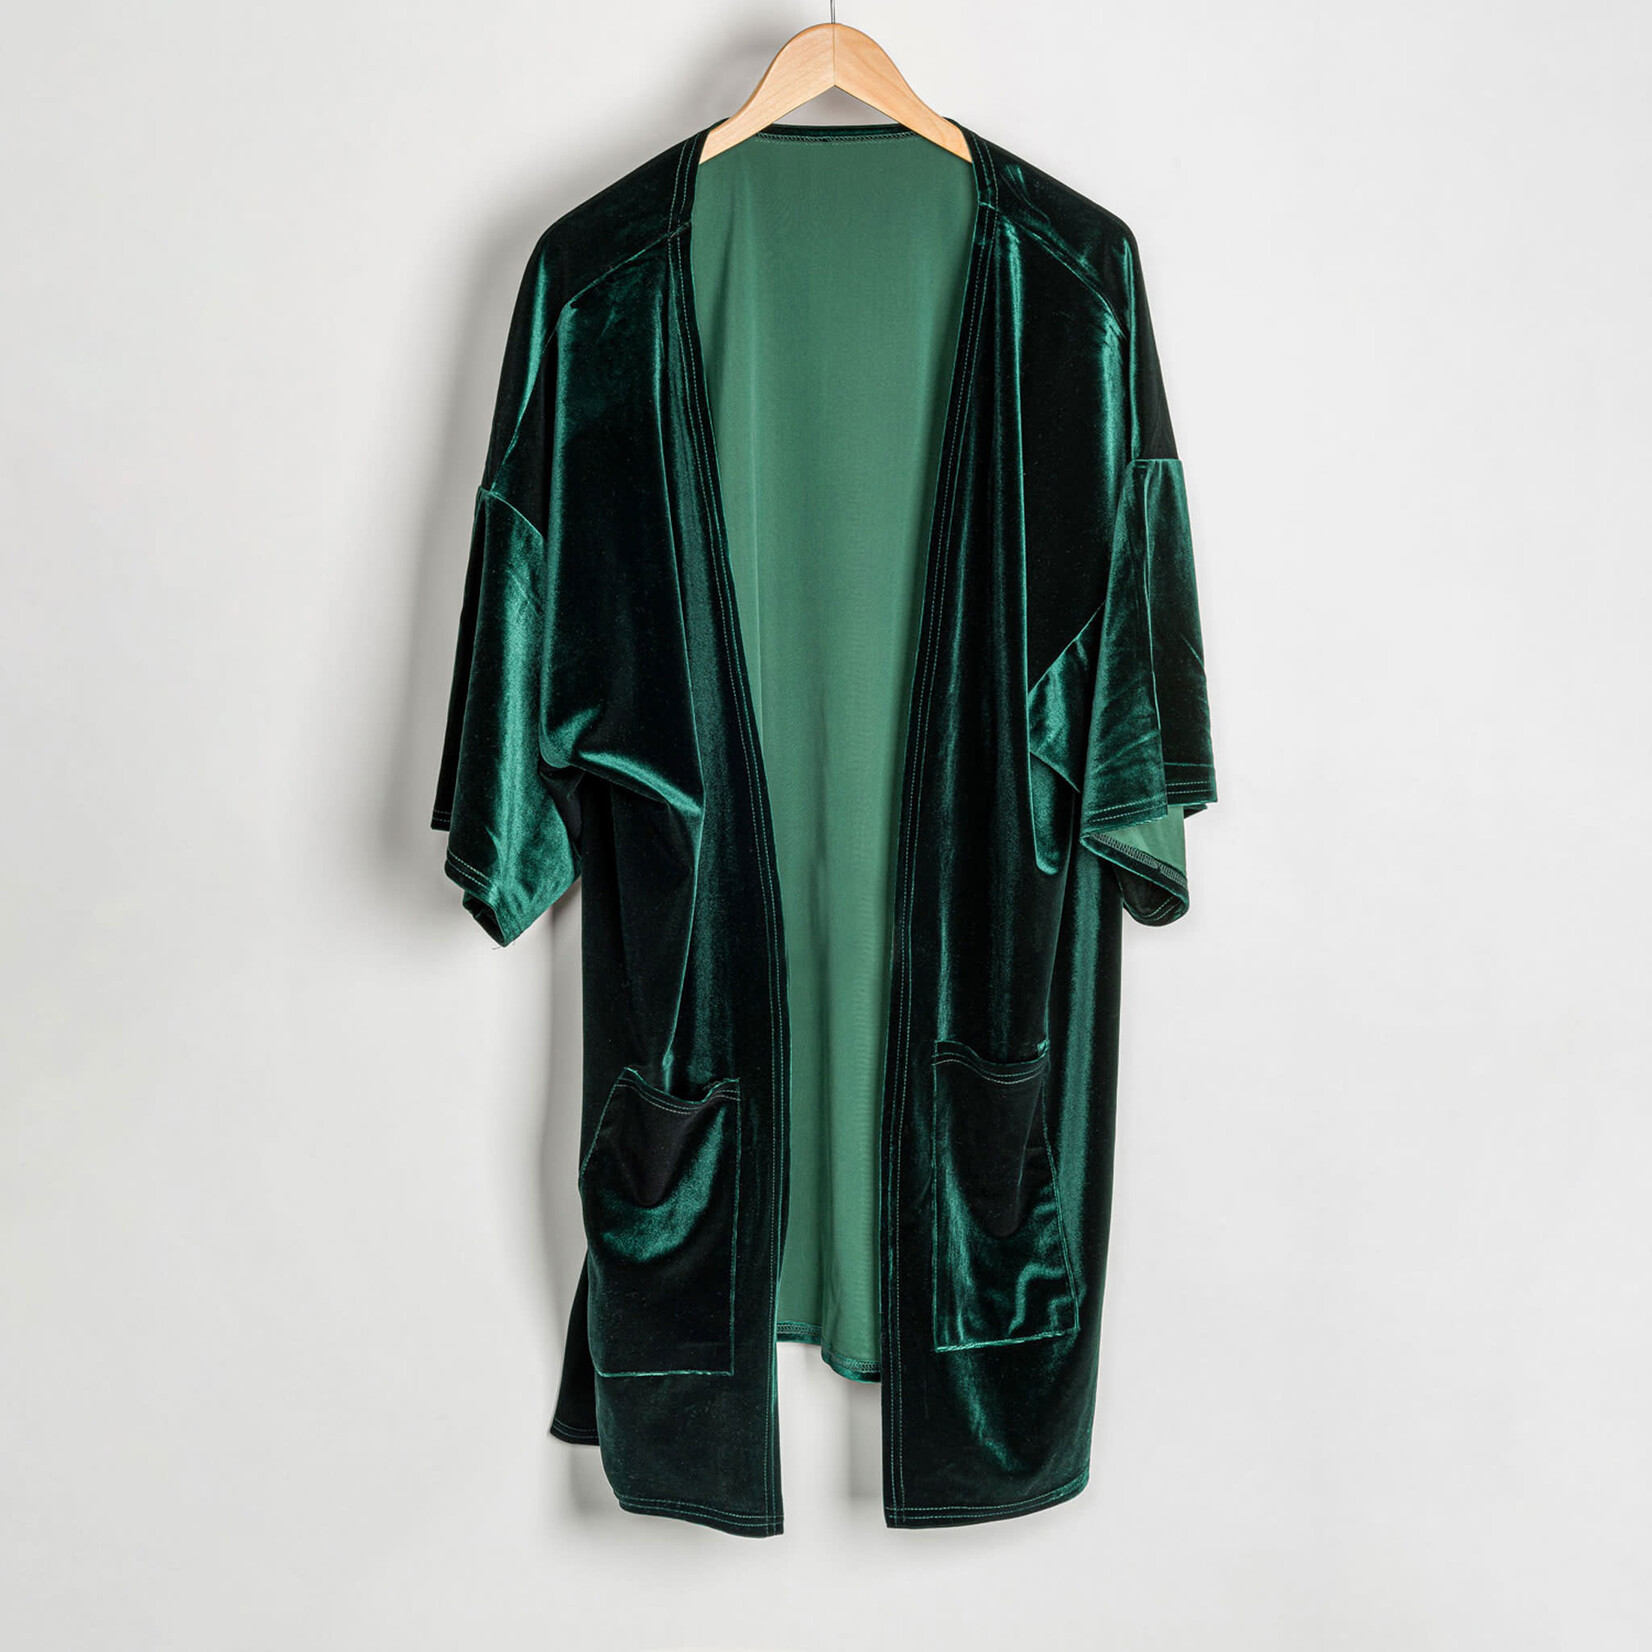 Howards Howard's Mid Thigh Length Velvet Kimono w/Pockets OS